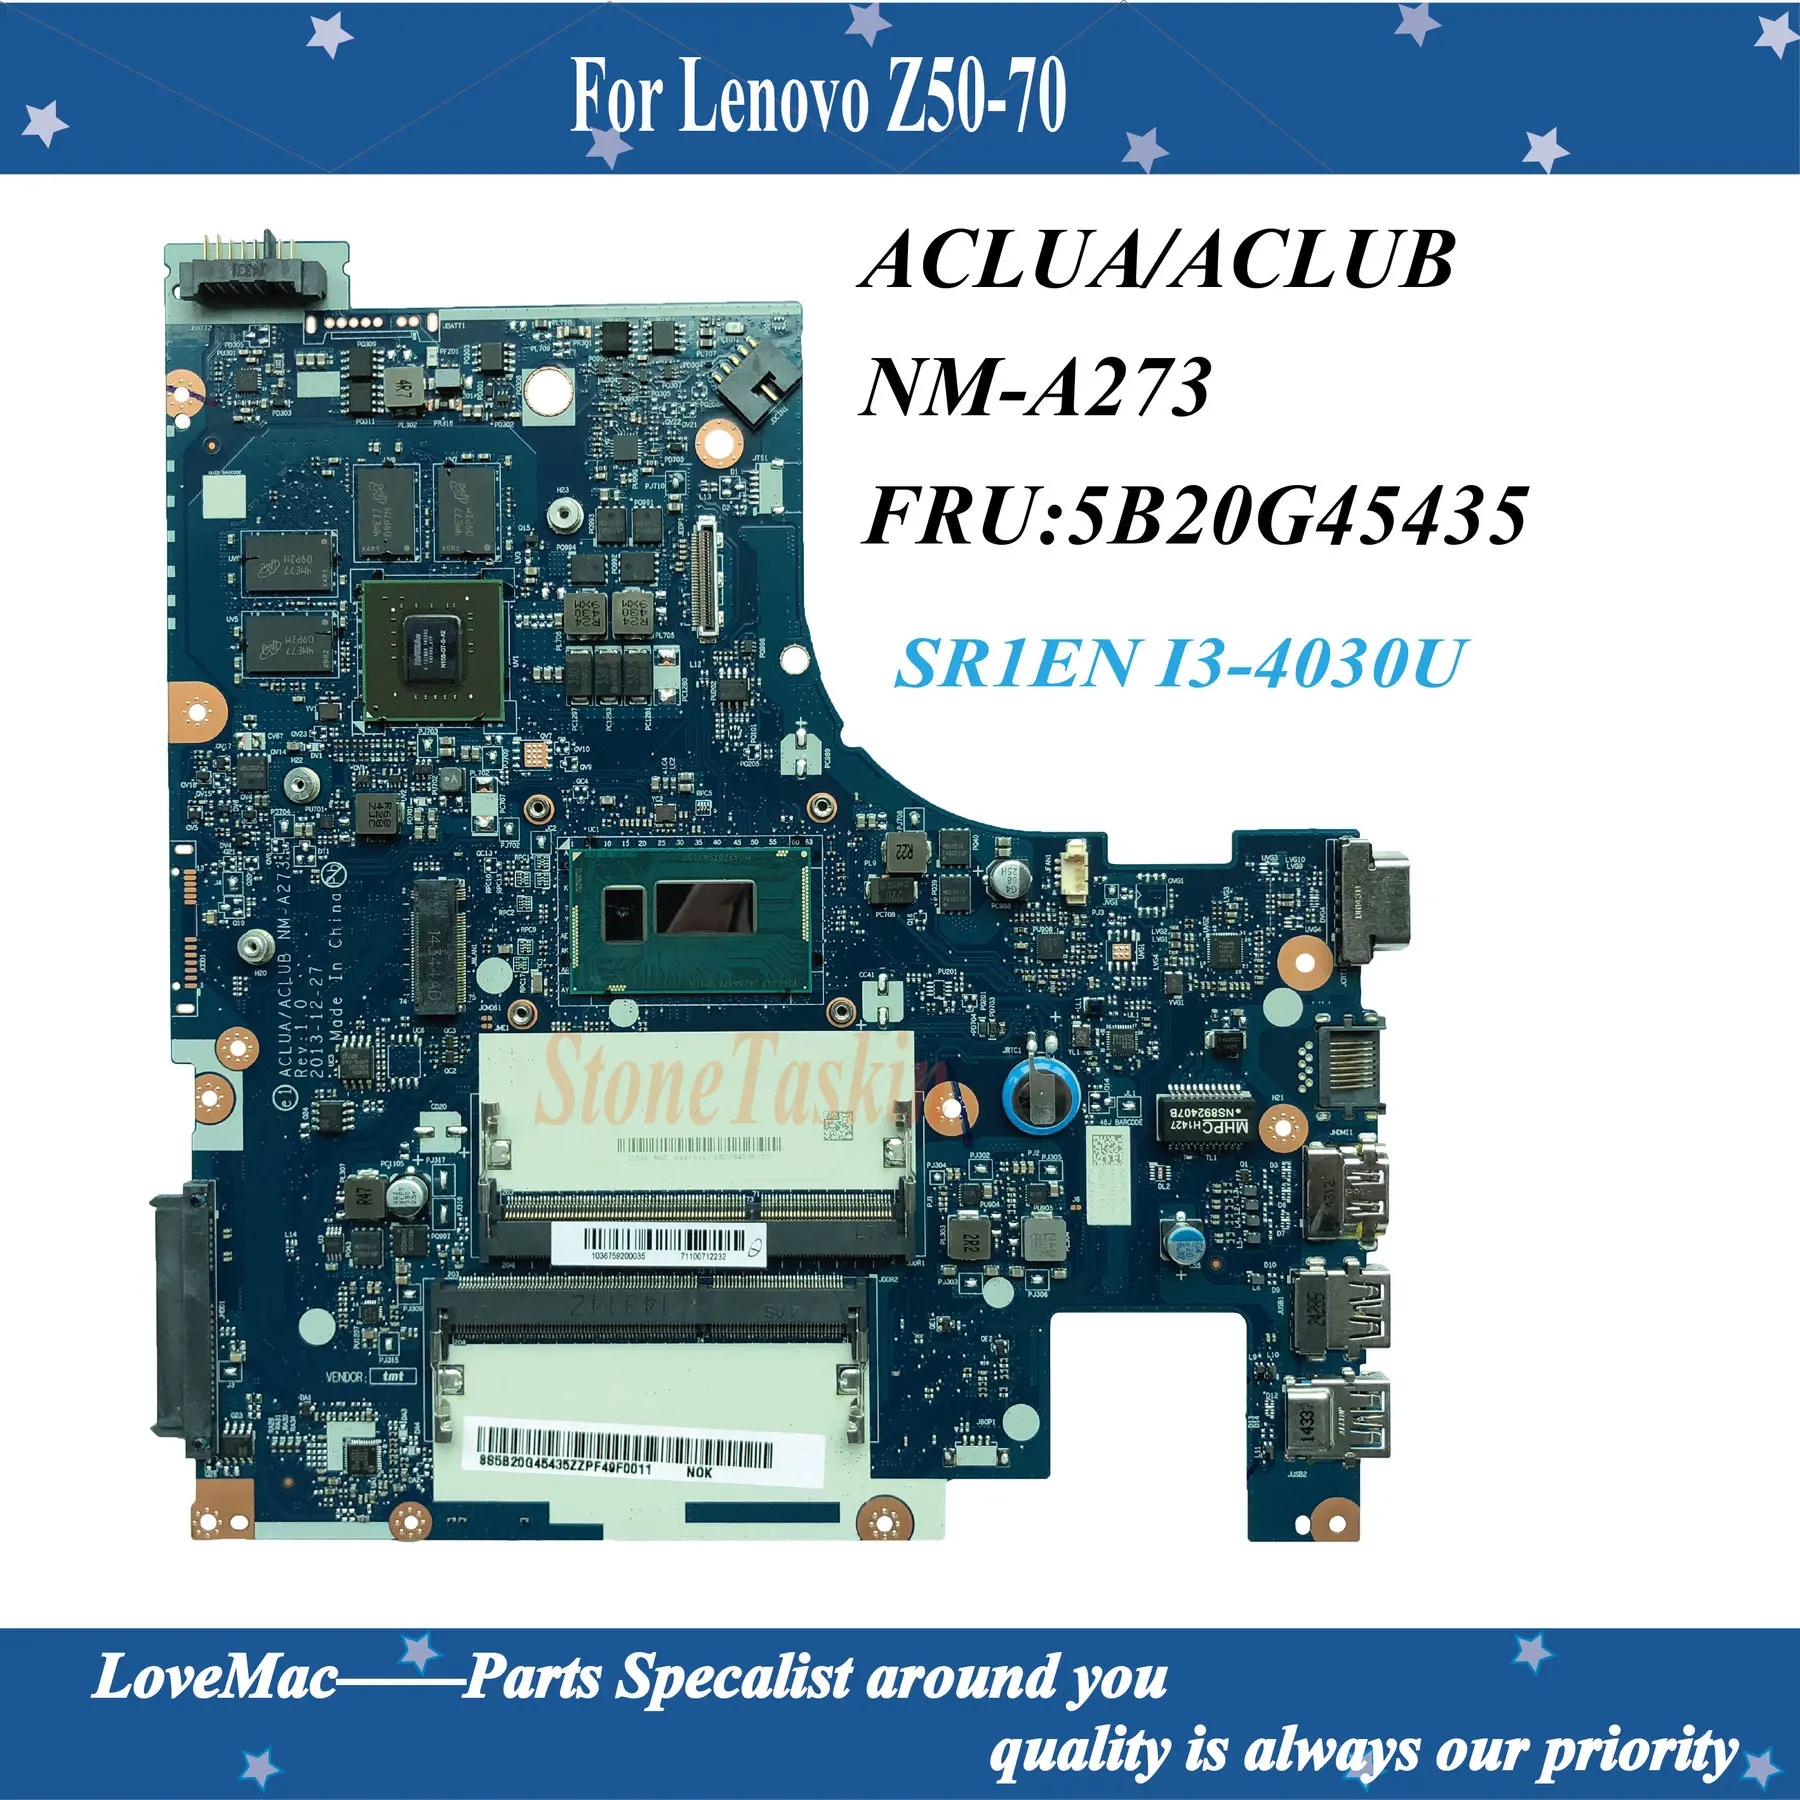 

High quality ACLUA/ACLUB NM-A273 for Lenovo Z50-70 Laptop Motherboard FRU:5B20G45435 SR1EN I3-4030U DDR3L 4GB 100% Fully Tested